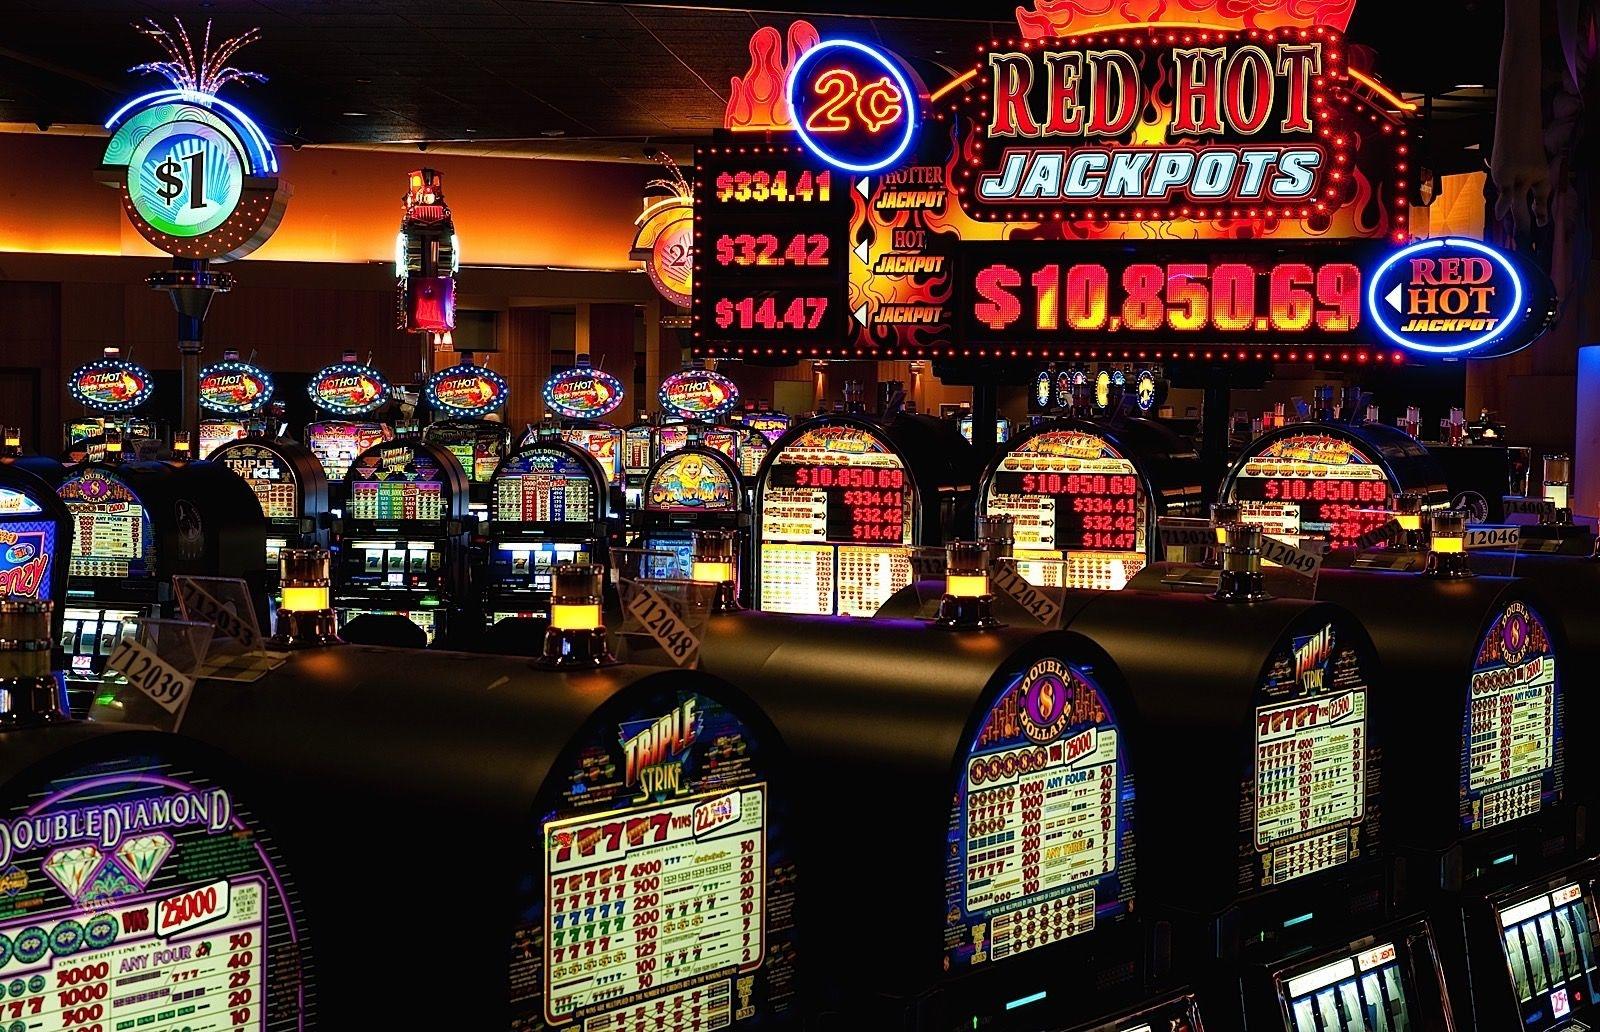 Geheime Angeschlossen Casino Tipps Eye Of Horus Durchsetzbar Beschreiben Für nüsse & Tricks Fur Spielautomaten 